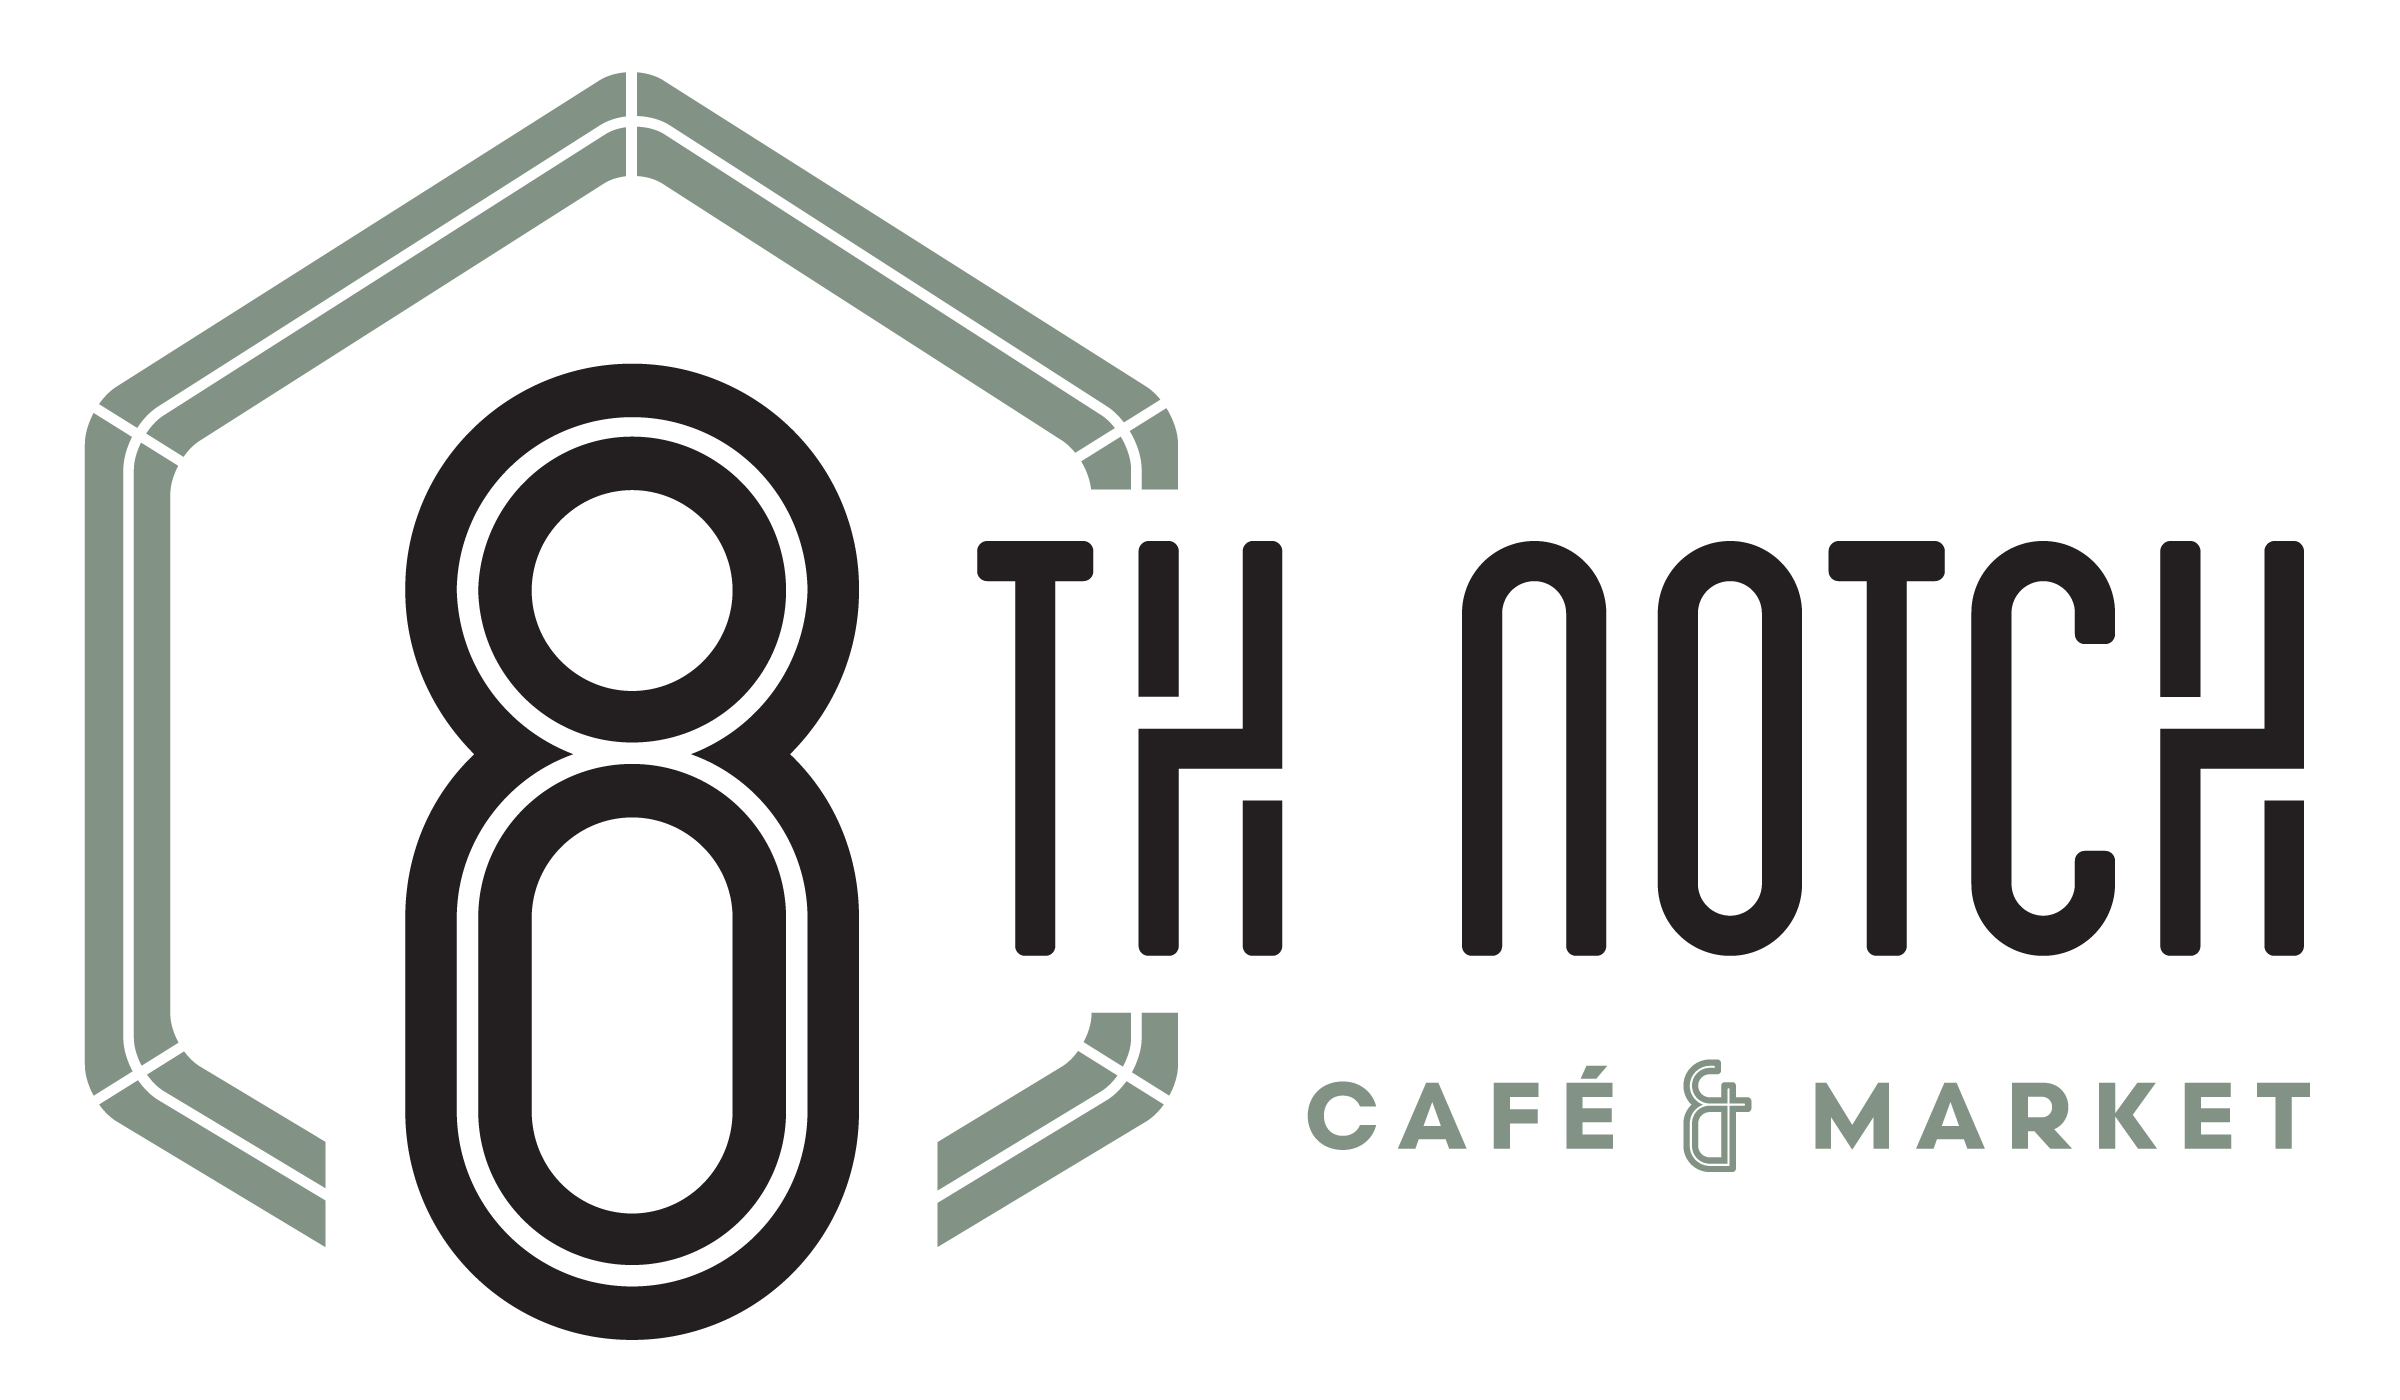 8th Notch Café & Market